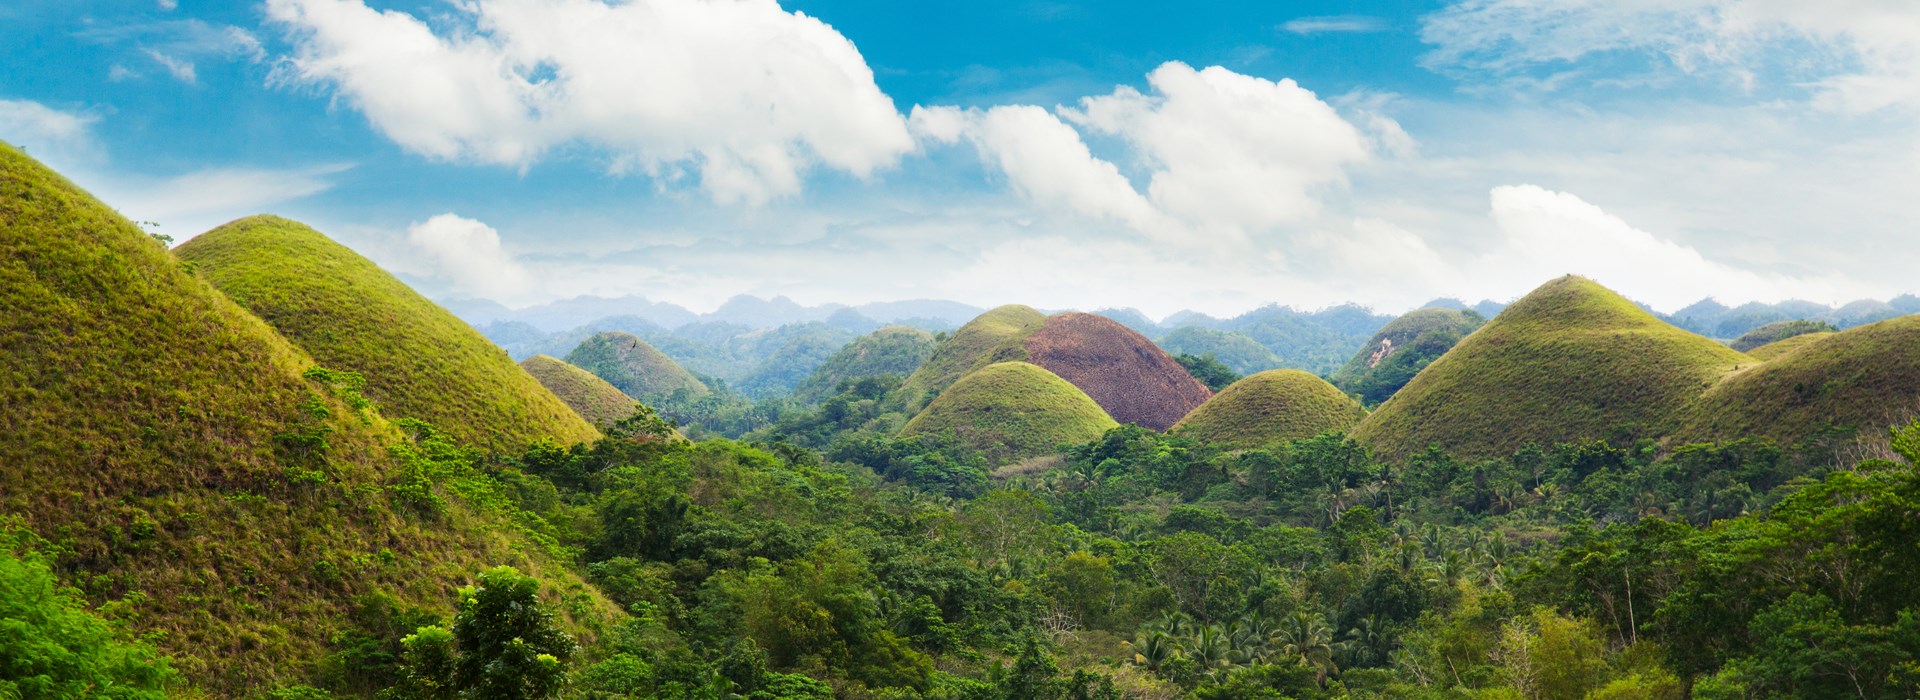 Visiter Les collines de Chocolat - Philippines